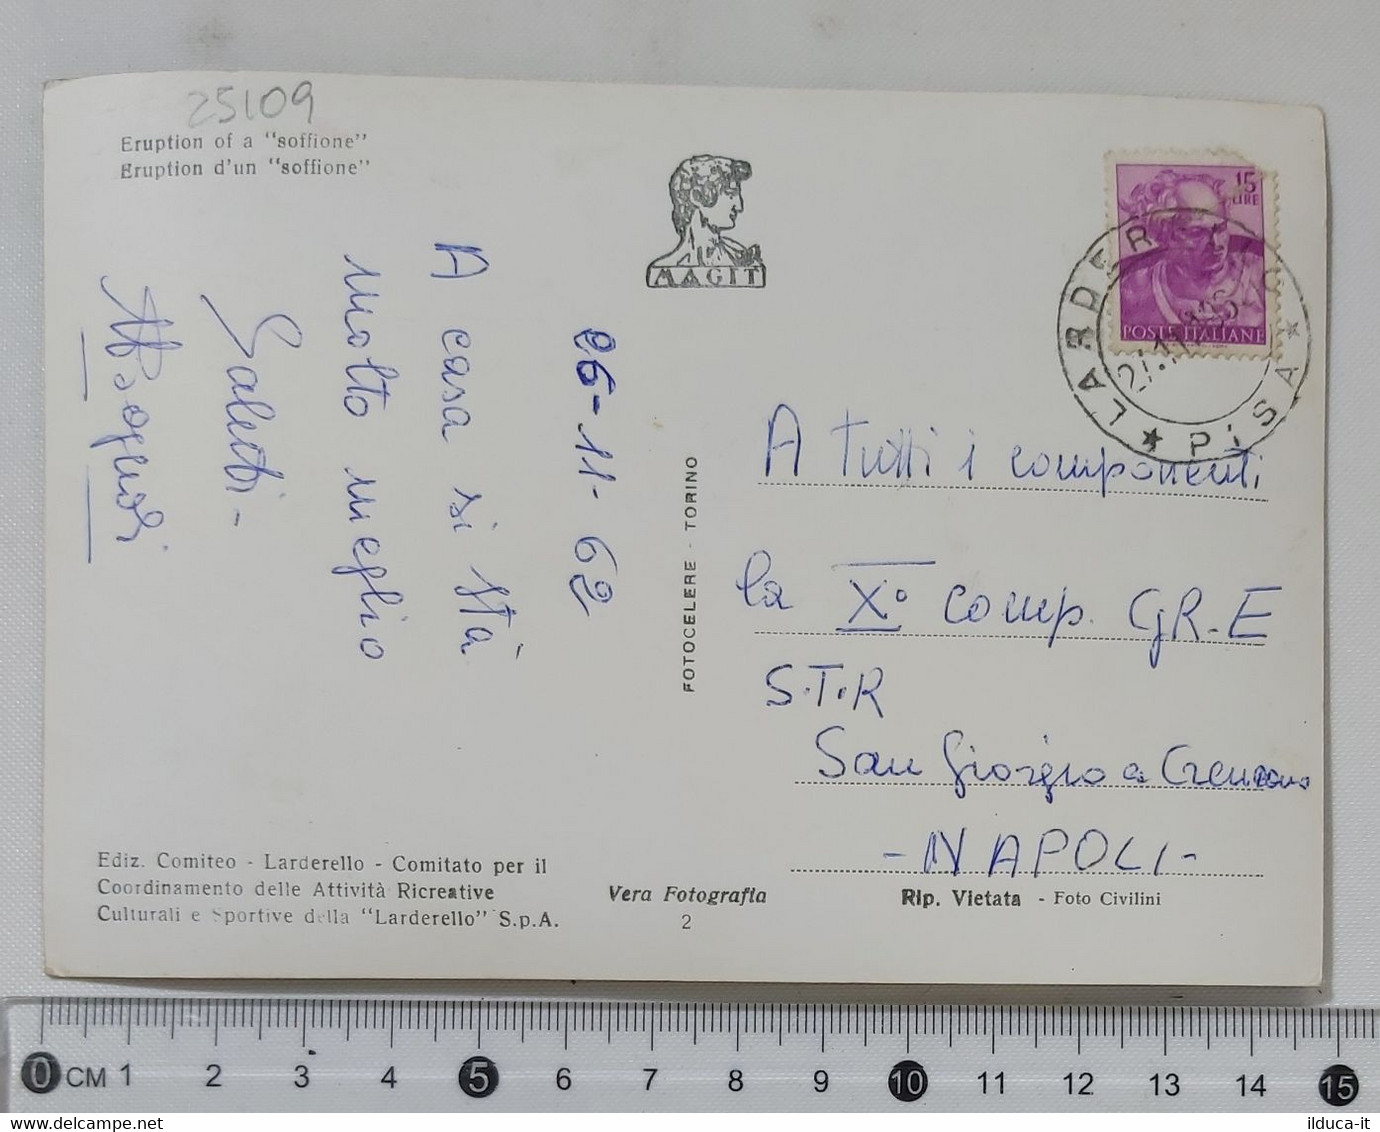 25109 Cartolina - Pisa - Larderello - Soffione In Eruzione - VG 1962 - Pisa